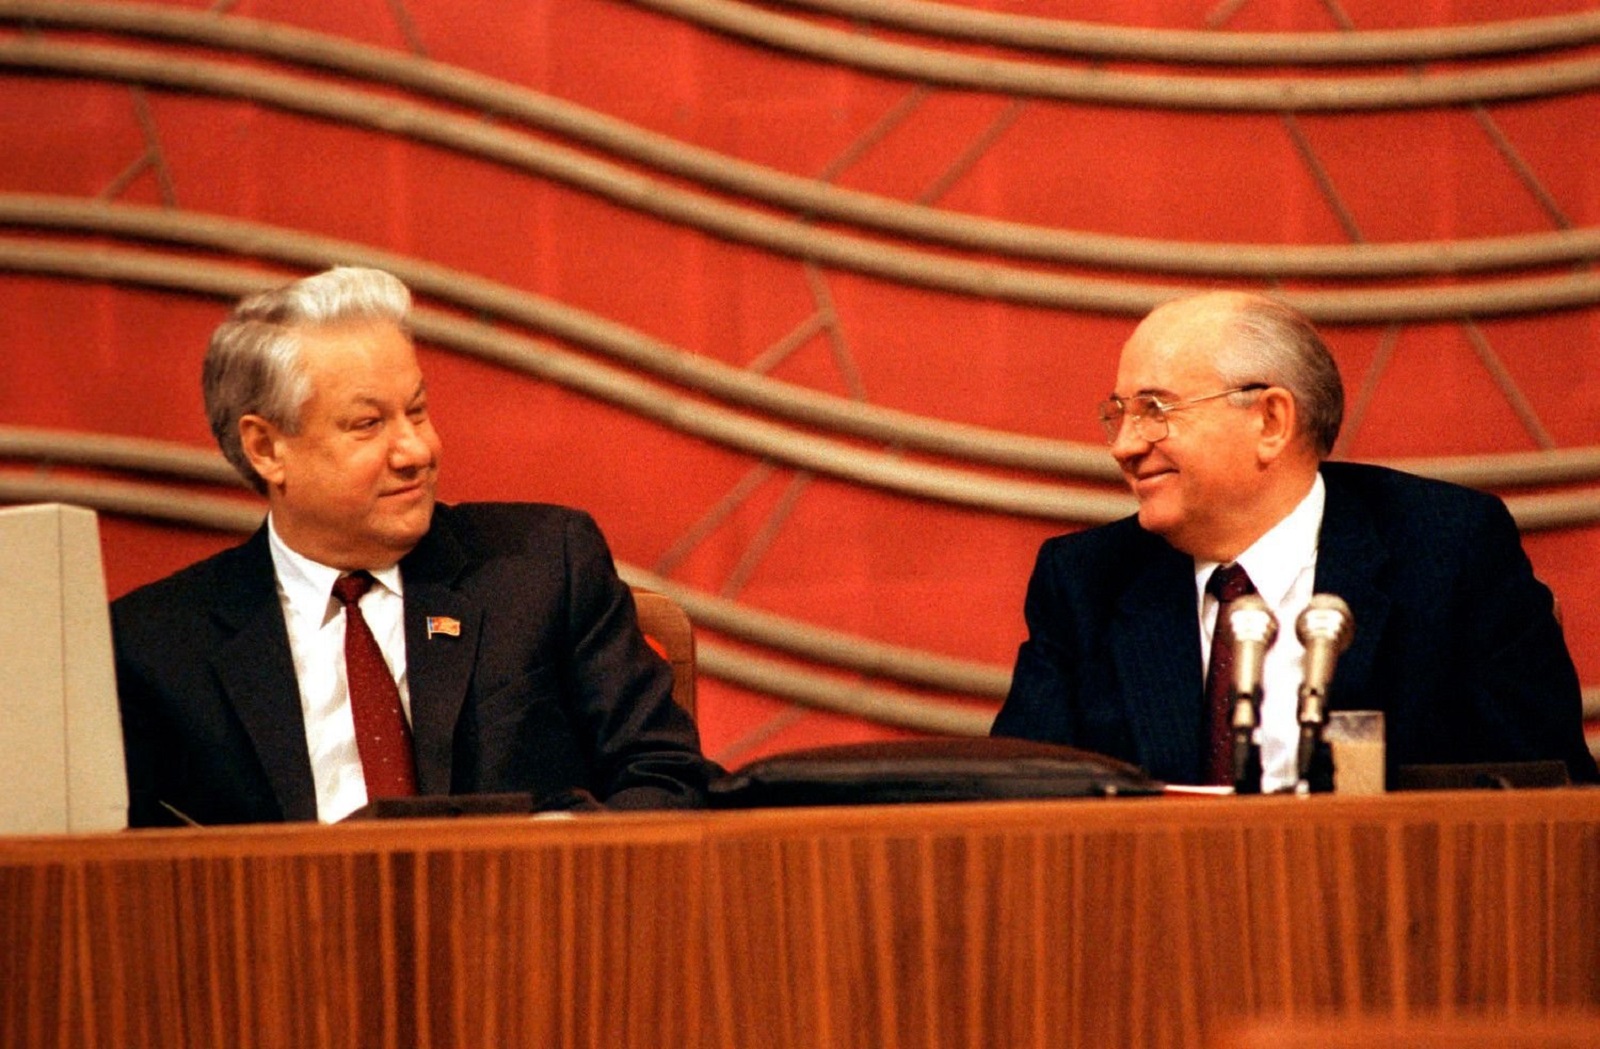 Съезд народных депутатов 1988. Горбачев 1991. Горбачев председатель Верховного совета СССР.